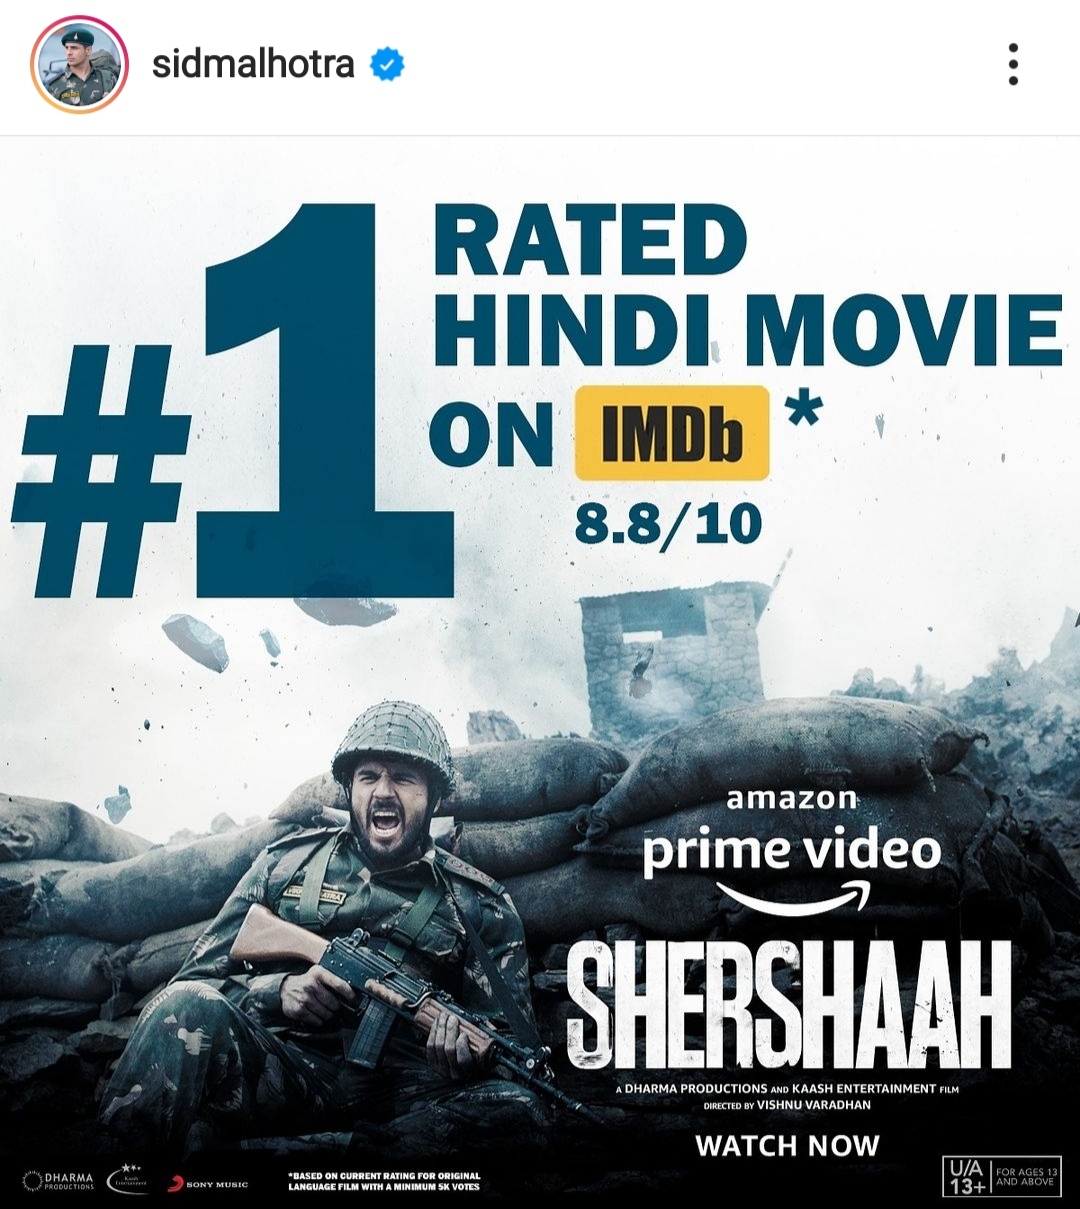 sidhaarth shamsher kiara imdb top movie